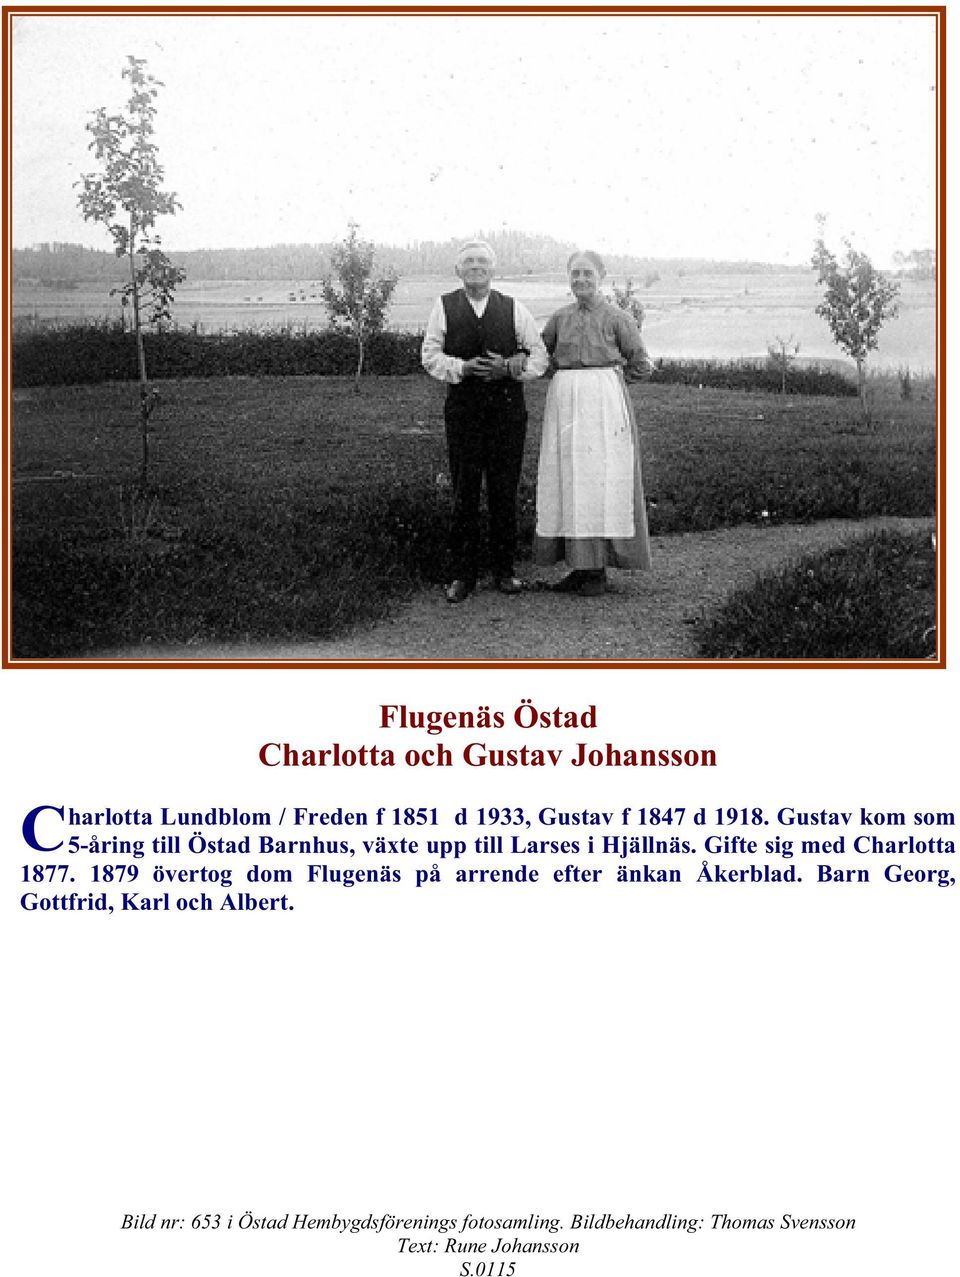 Gifte sig med Charlotta 1877. 1879 övertog dom Flugenäs på arrende efter änkan Åkerblad.